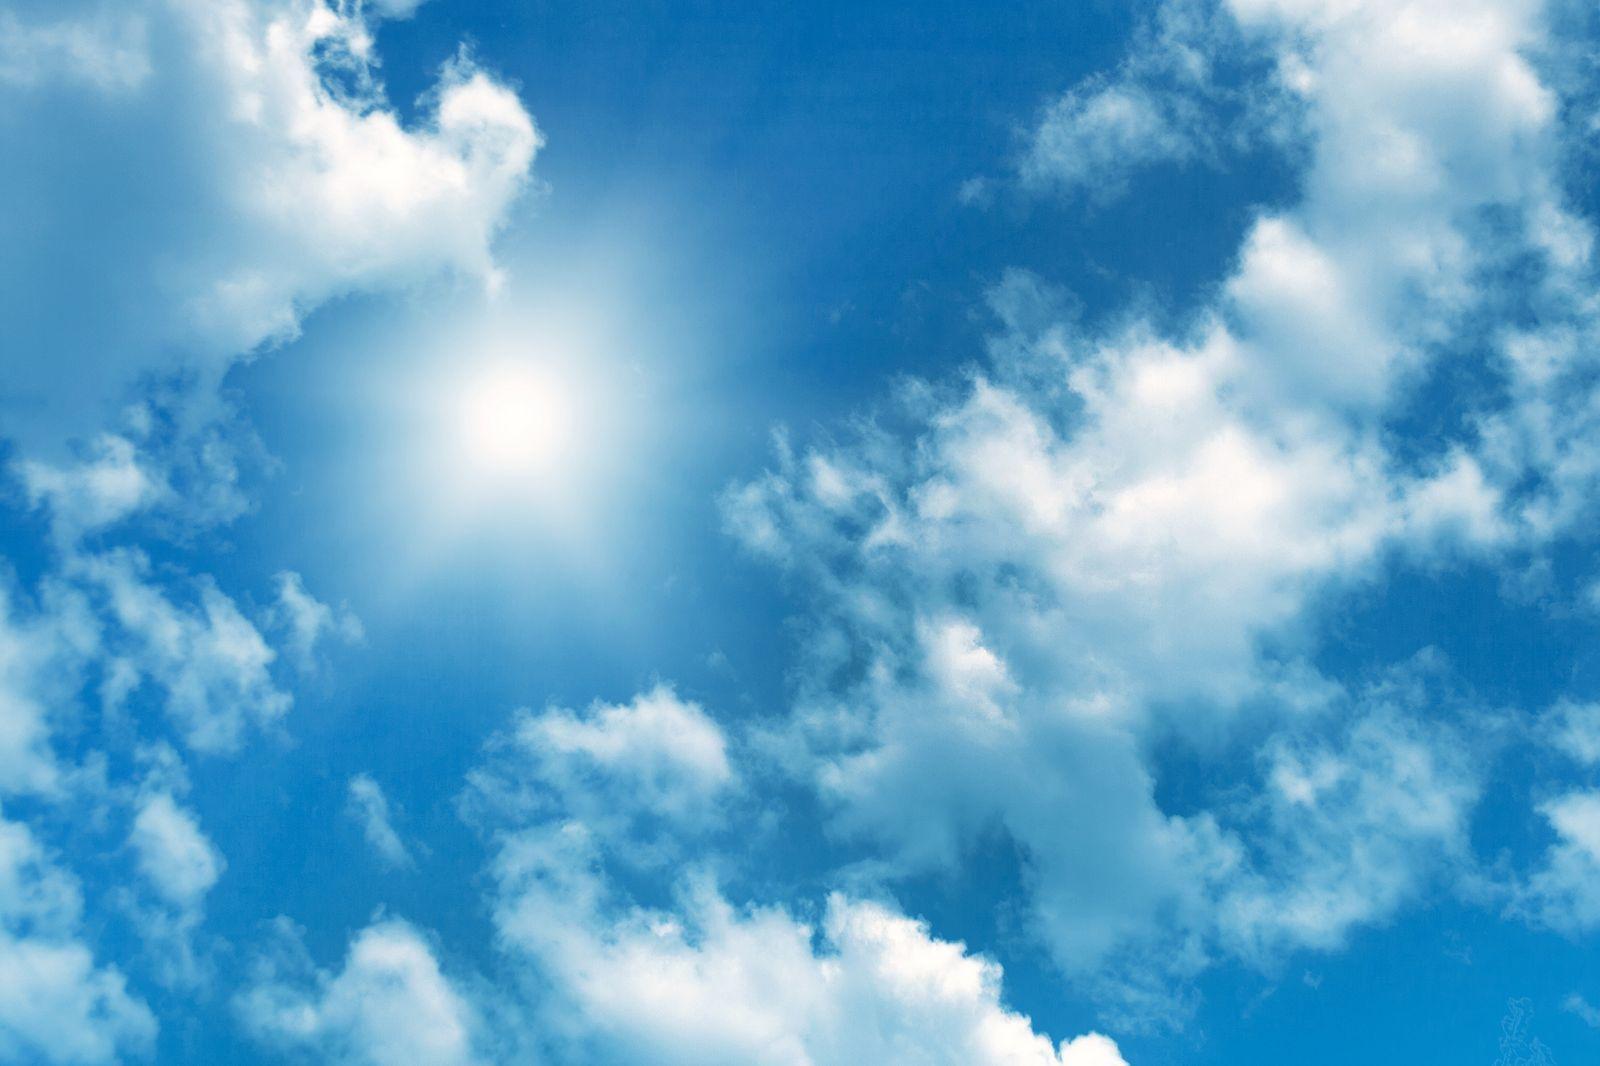 Голубое небо с небольшими облачками — картинка с высоким разрешением  5184×3456 — Abali.ru